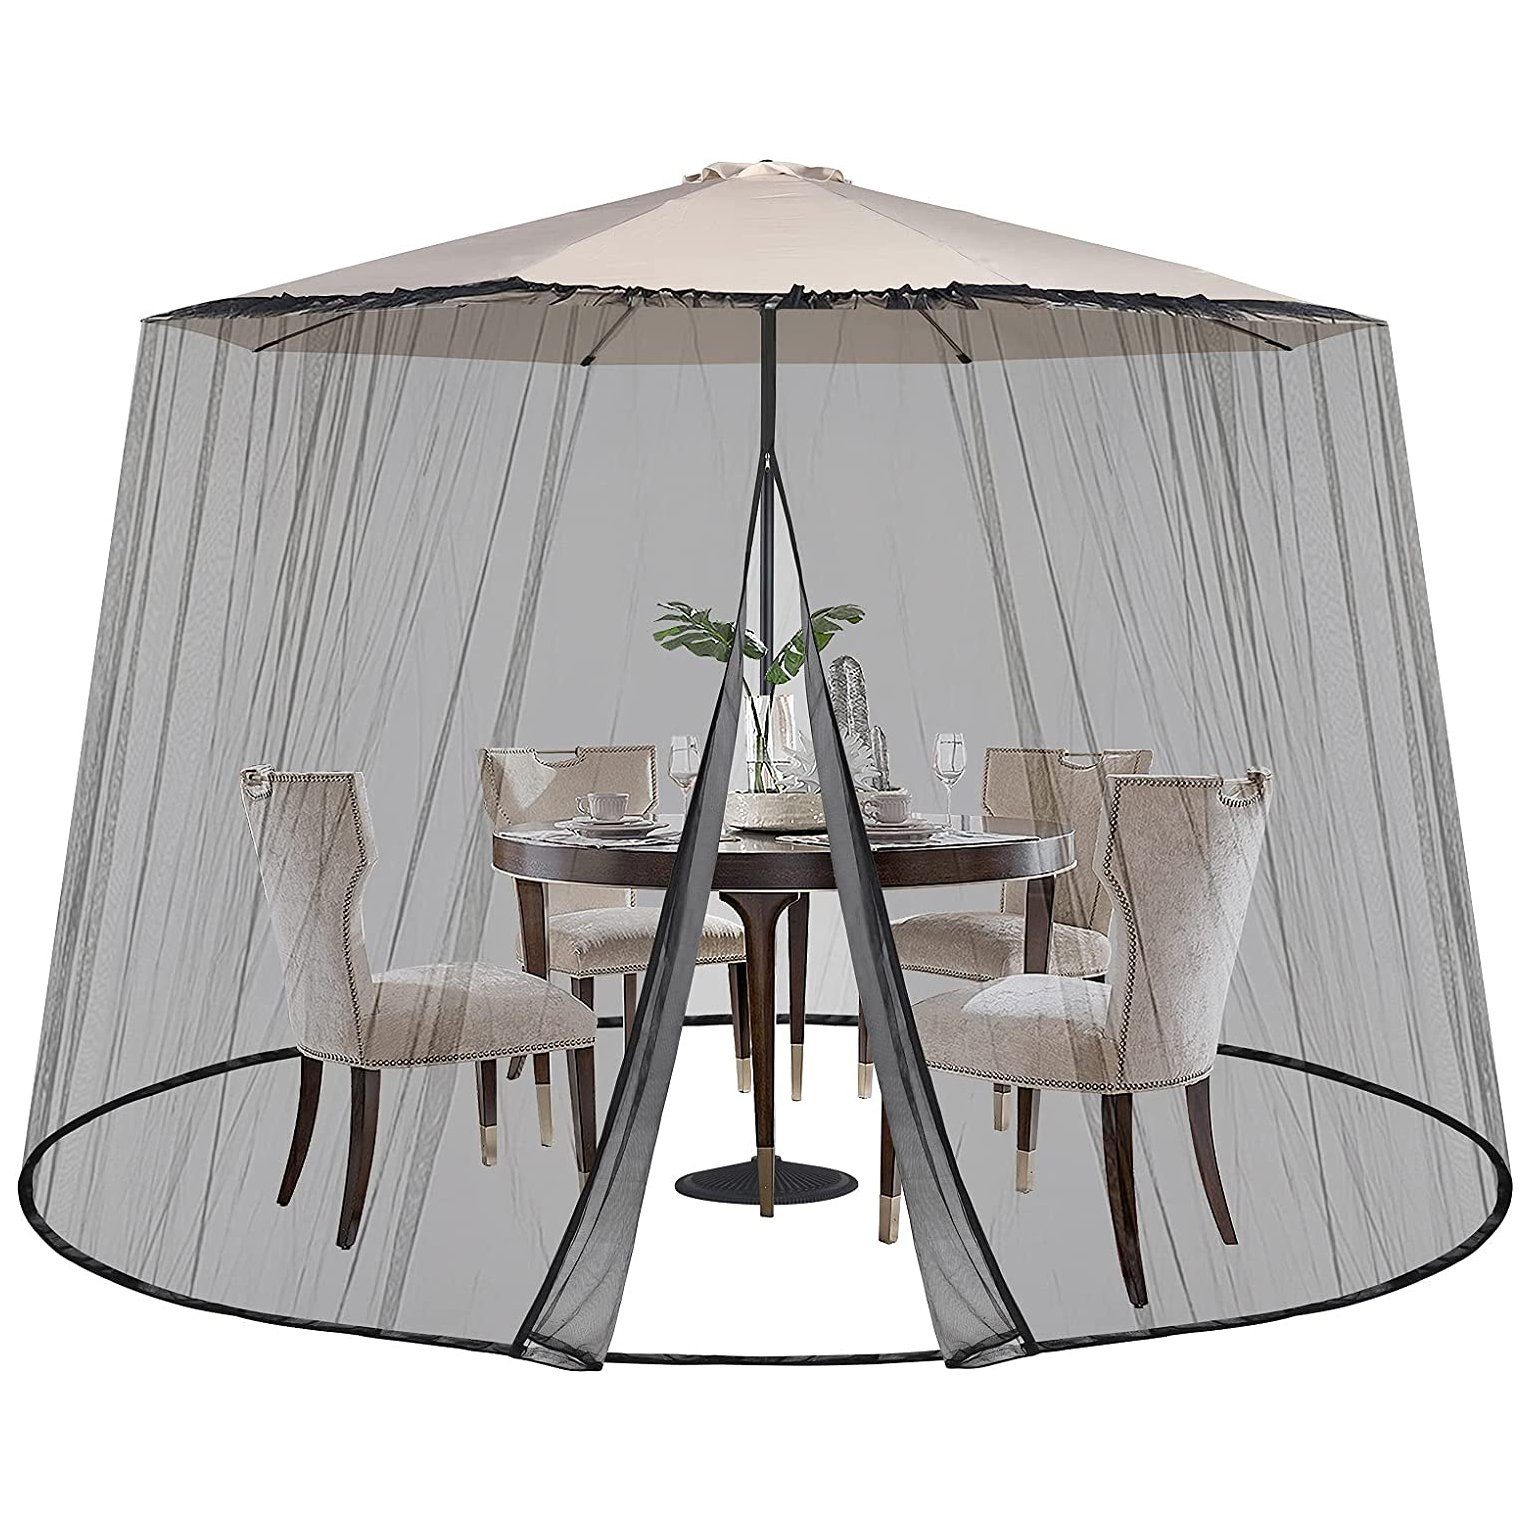 Sekey Moskitonetz Verstellbares Insektenschutz für 250-300 cm Sonnenschirme Pavillon, Fliegengitter Mückennetz für Sonnenschirm, 2,5 m Höhe, mit 2 Türen